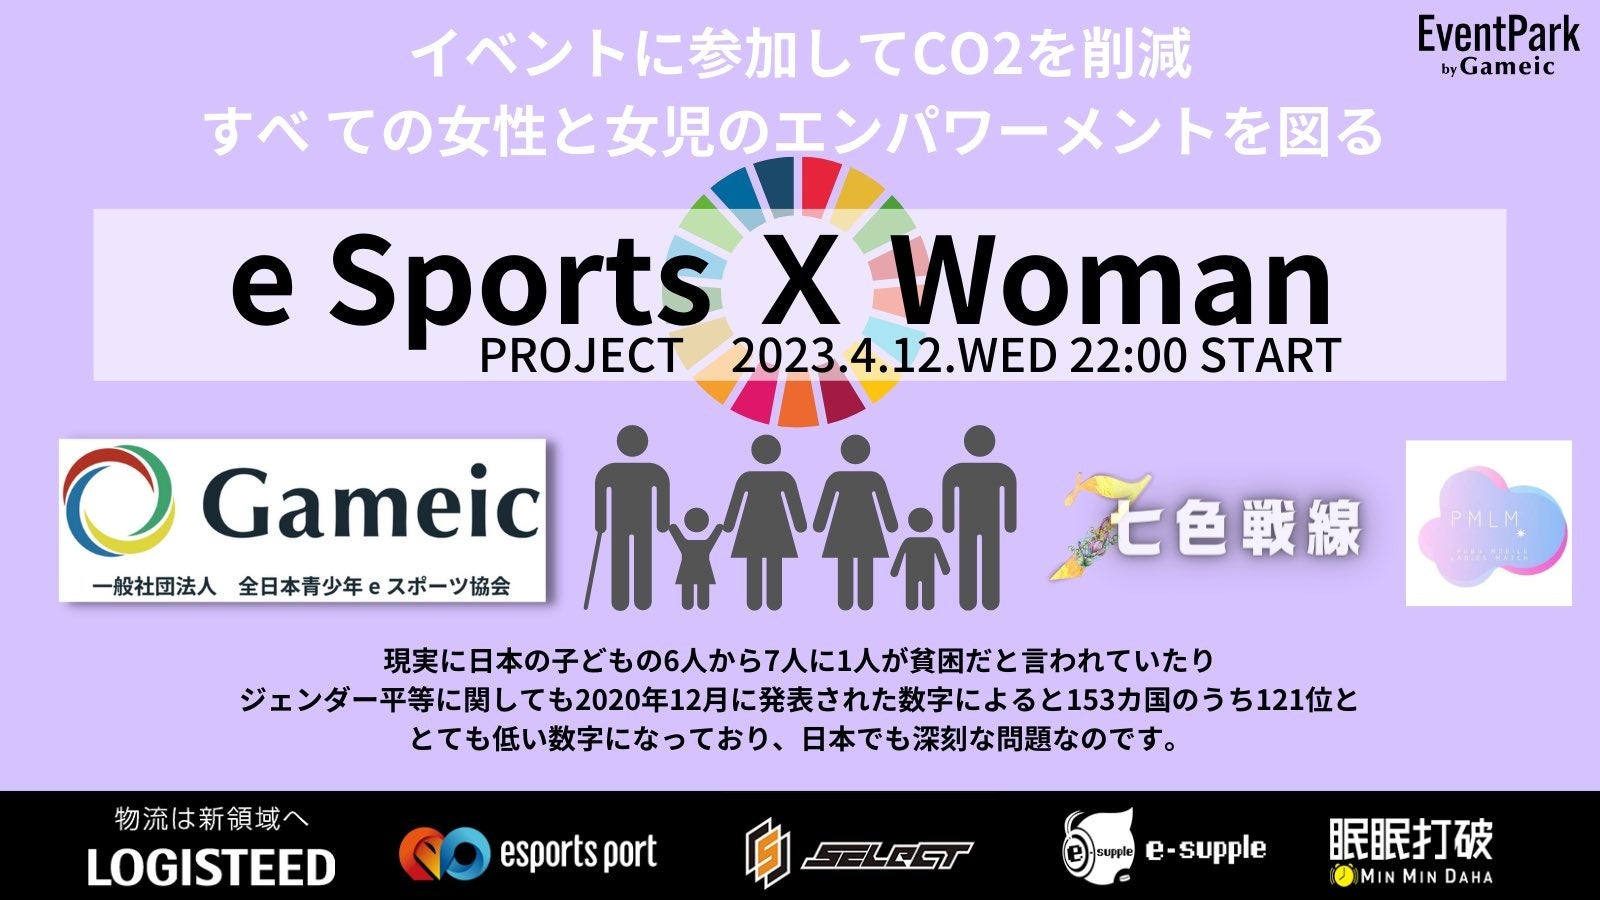 【eスポーツから、更なる女性活躍を】eスポーツコミュニティの「七色戦線」が、女子限定のeスポーツ大会「eSports × Woman PROJECT」を開催いたします。のサブ画像1